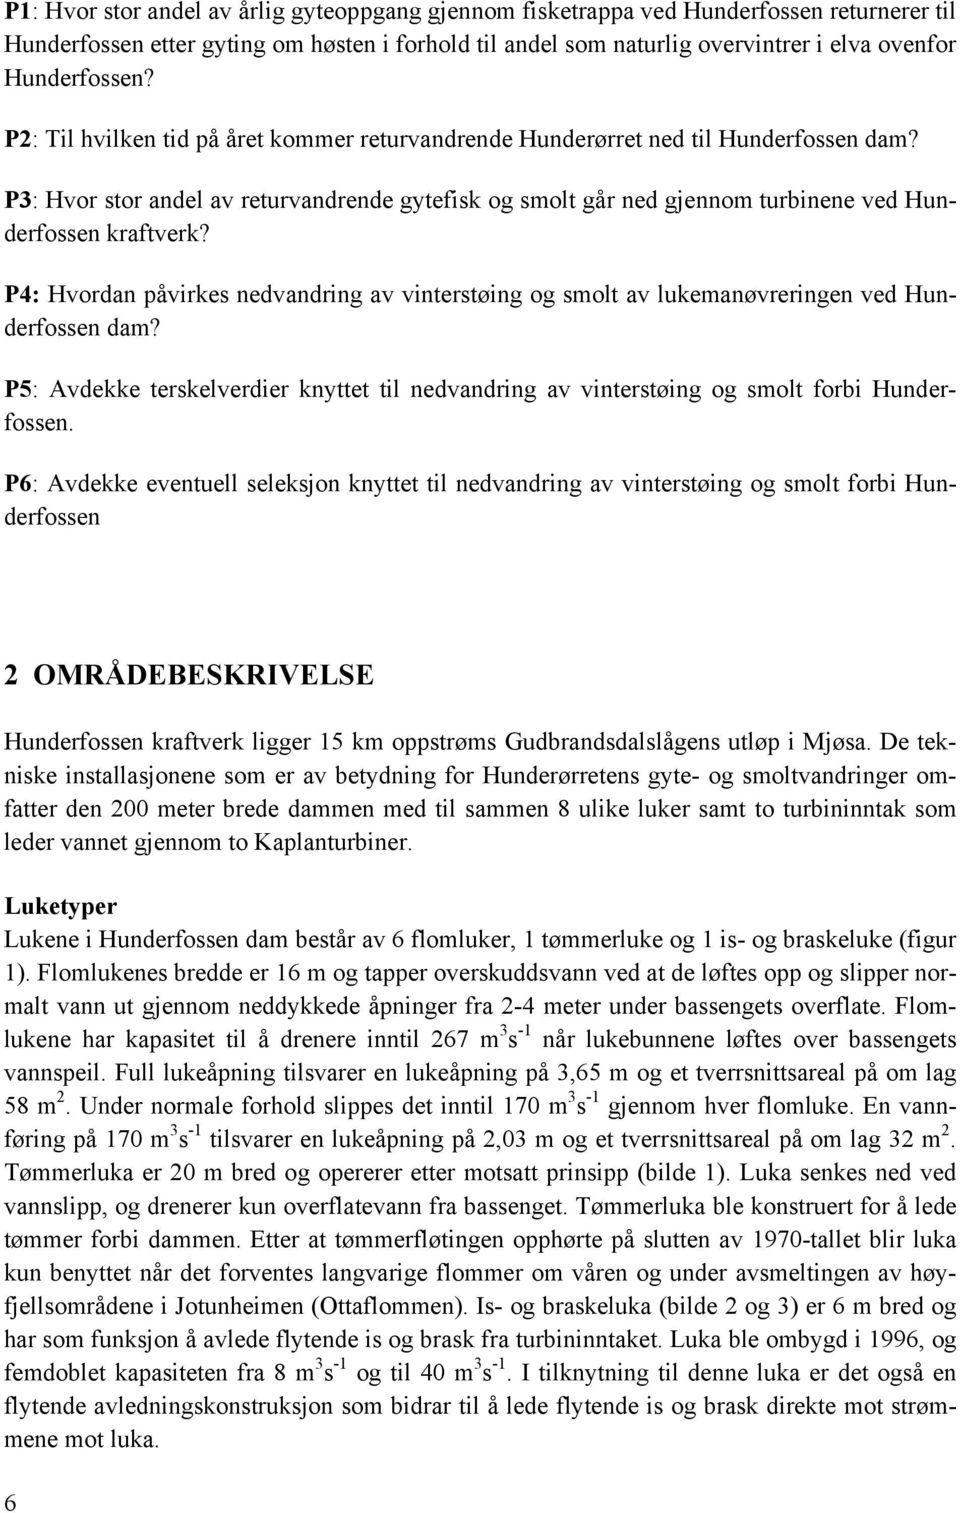 P3: Hvor stor andel av returvandrende gytefisk og smolt går ned gjennom turbinene ved Hunderfossen kraftverk?